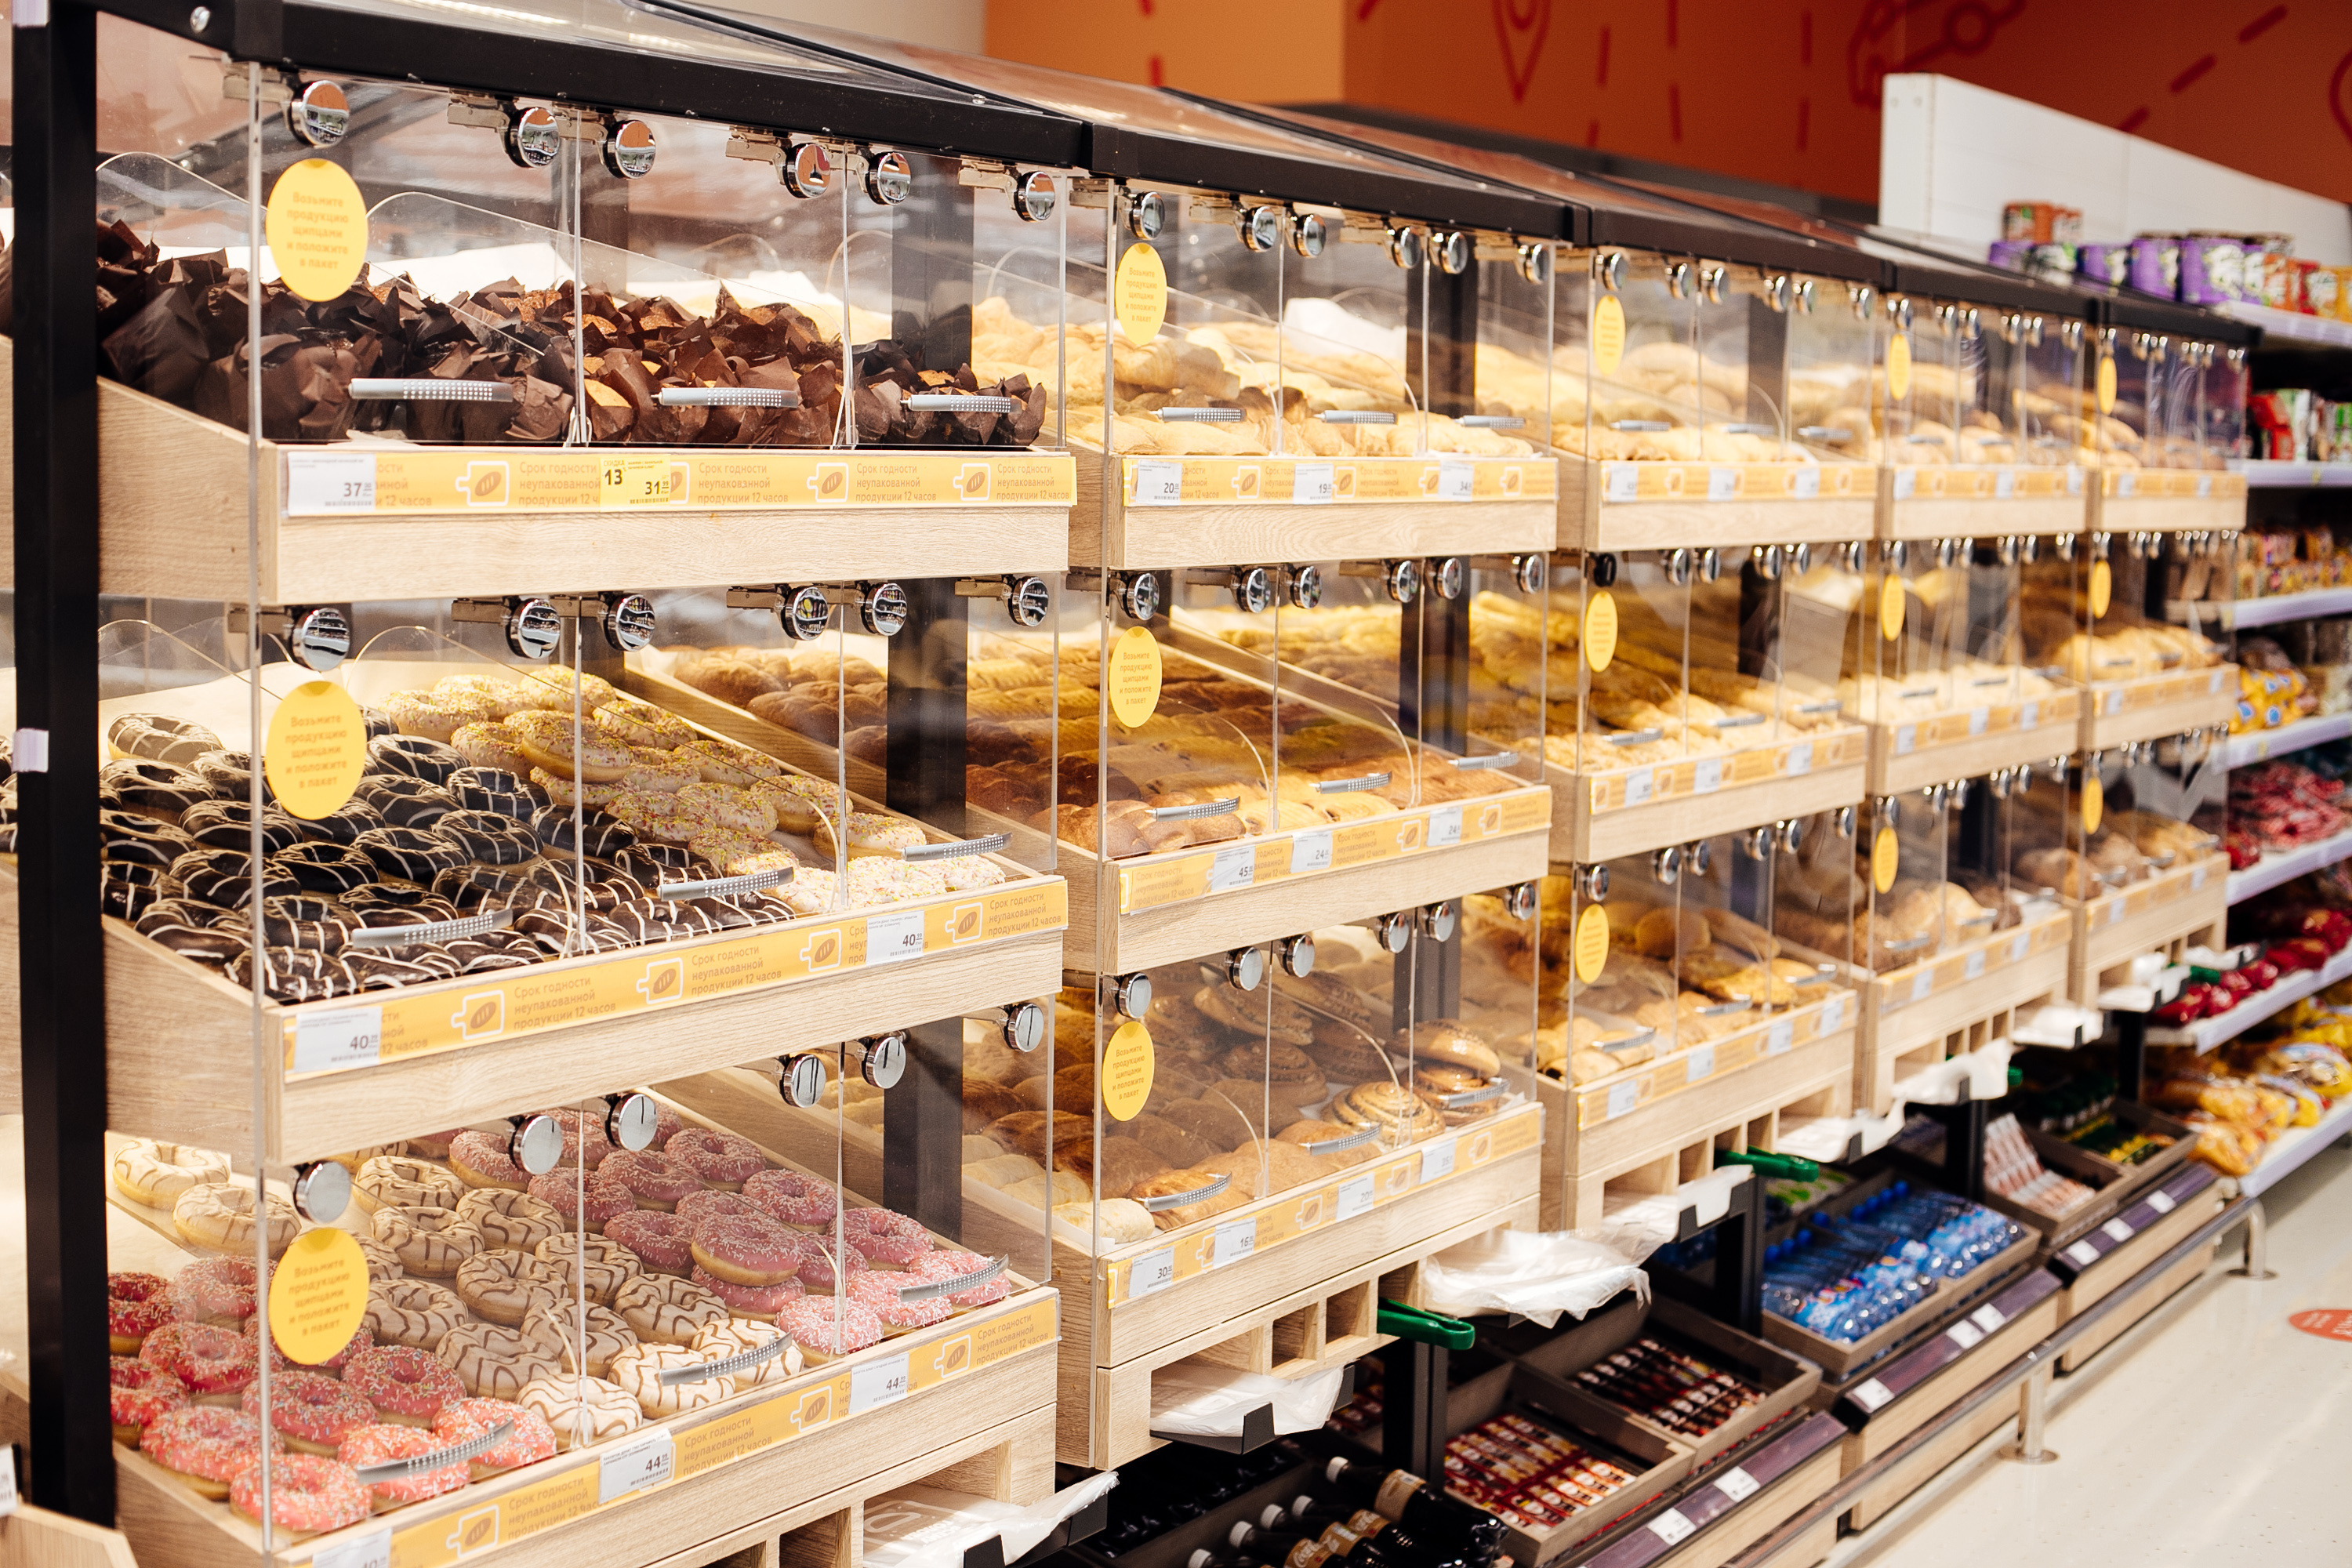 Также в ассортименте сладкого есть разнообразные виды тортов, пирожных и пончиков